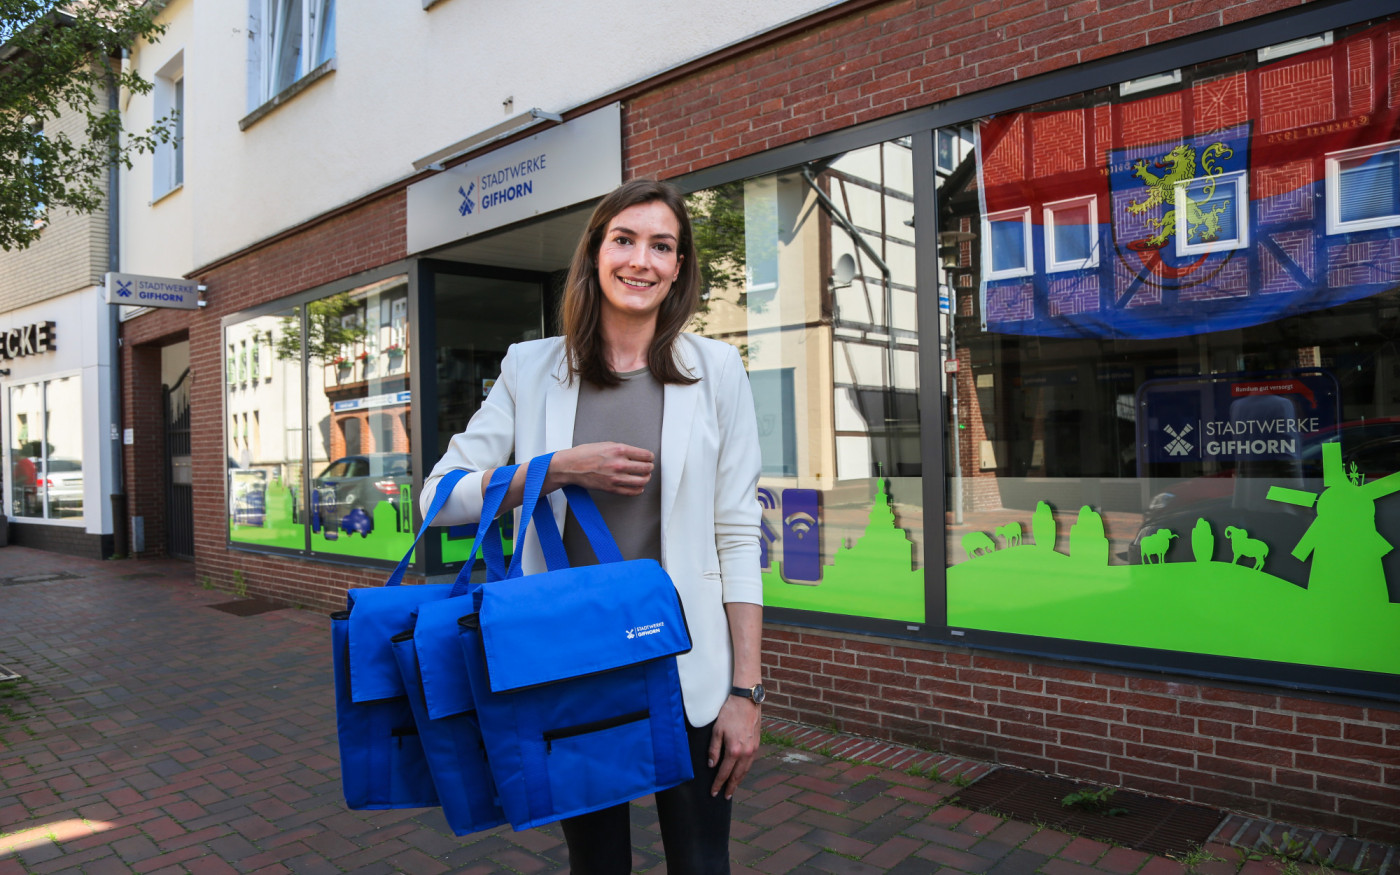 Stadtwerke Gifhorn spendieren coole Kühltaschen für die Gewinner-Teams